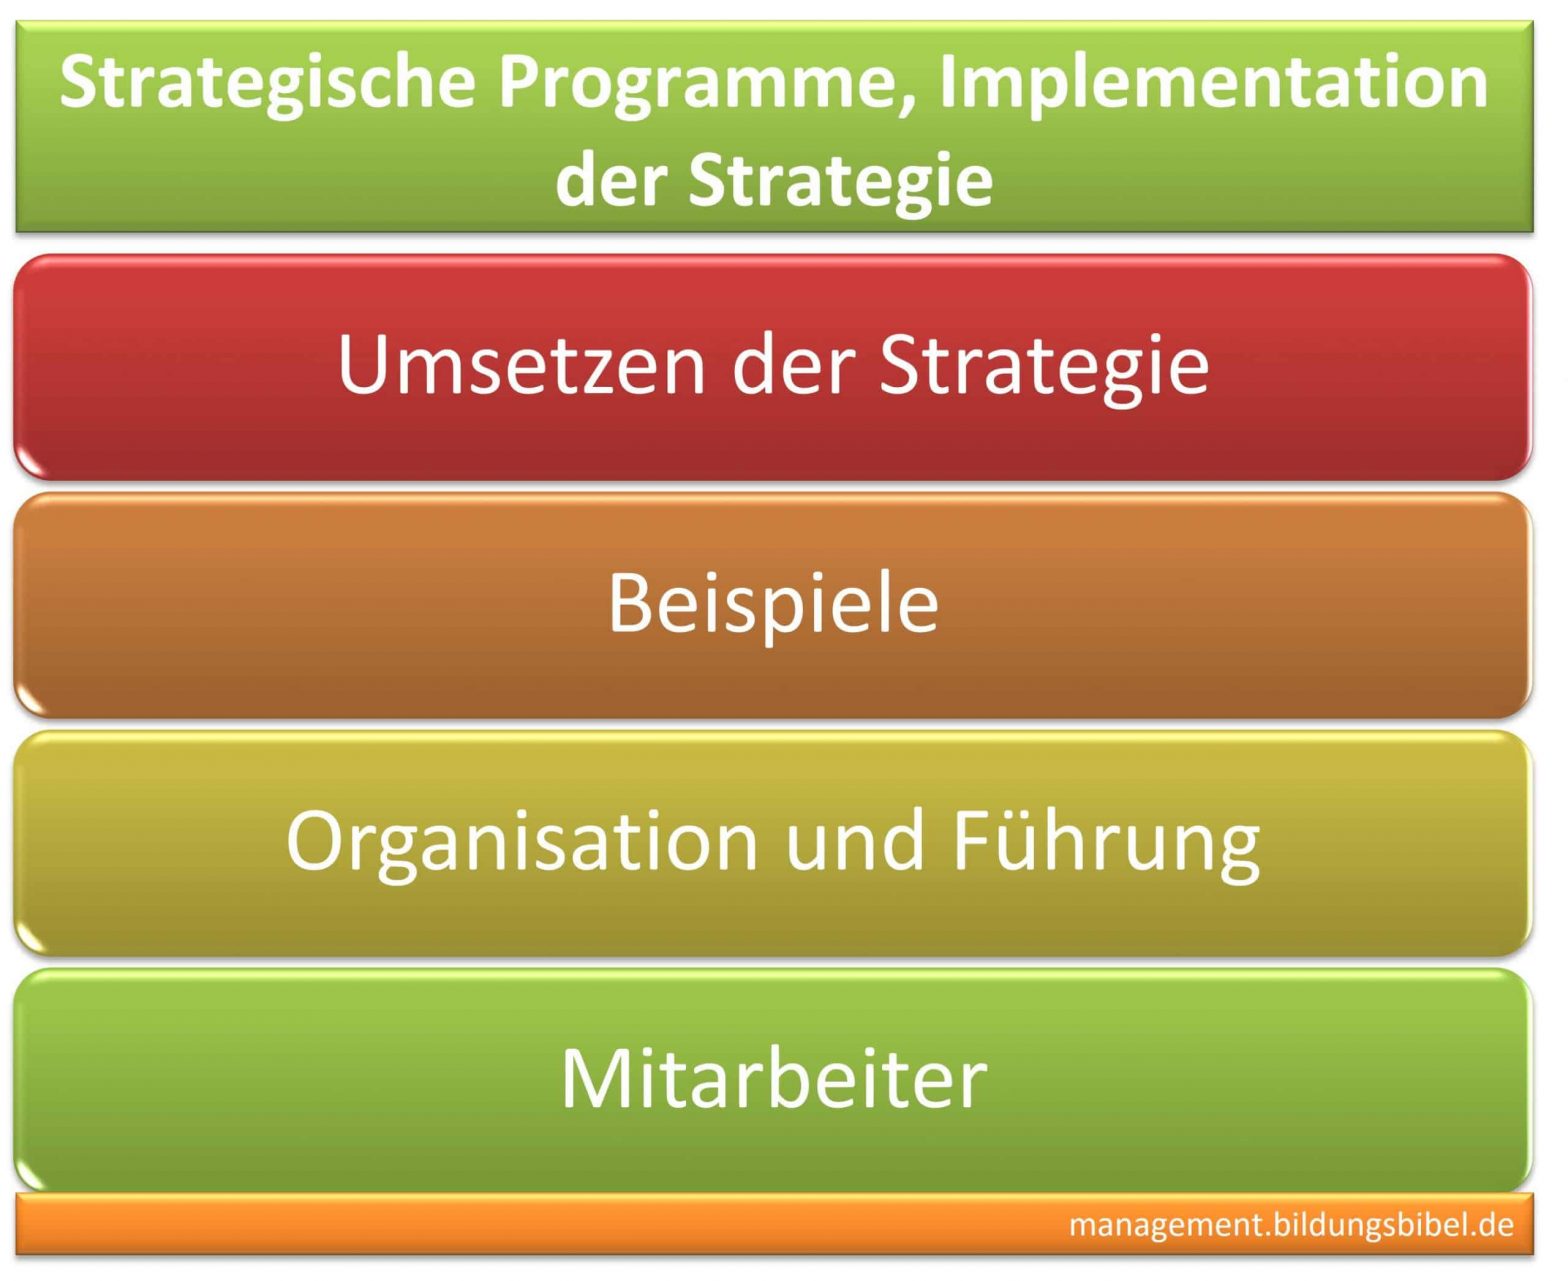 Strategische Programme, Infos zu Führung, Organisation, Mitarbeiter, Beispiel anhand Balance Scorecard, BSC, Implementation der Strategie.